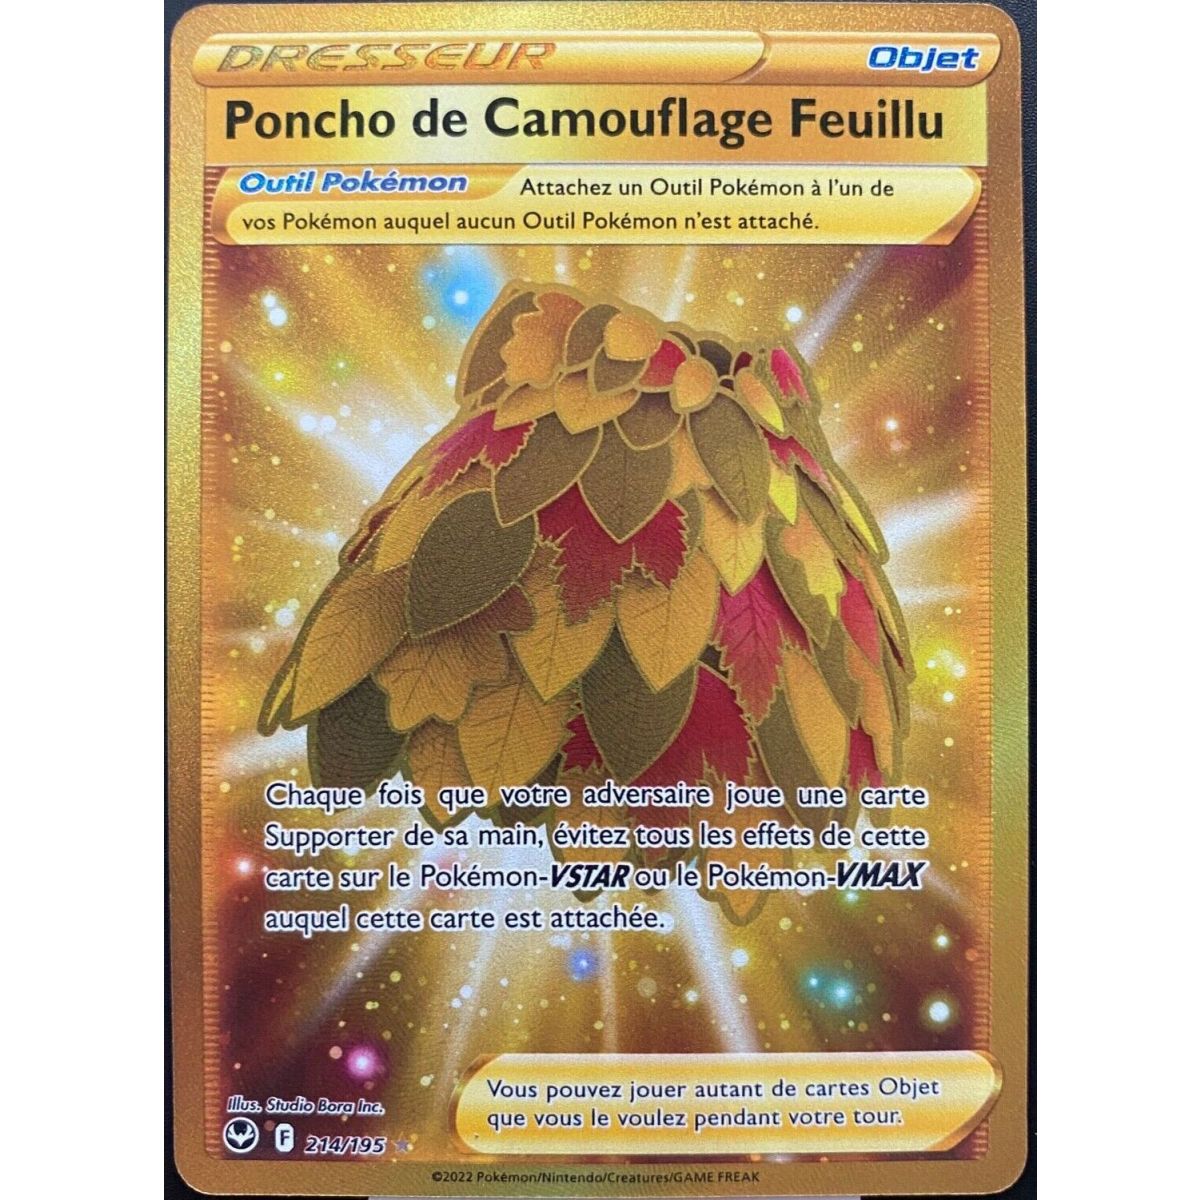 Poncho de Camouflage Feuillu - 214/195 - Dresseur Secrète Gold